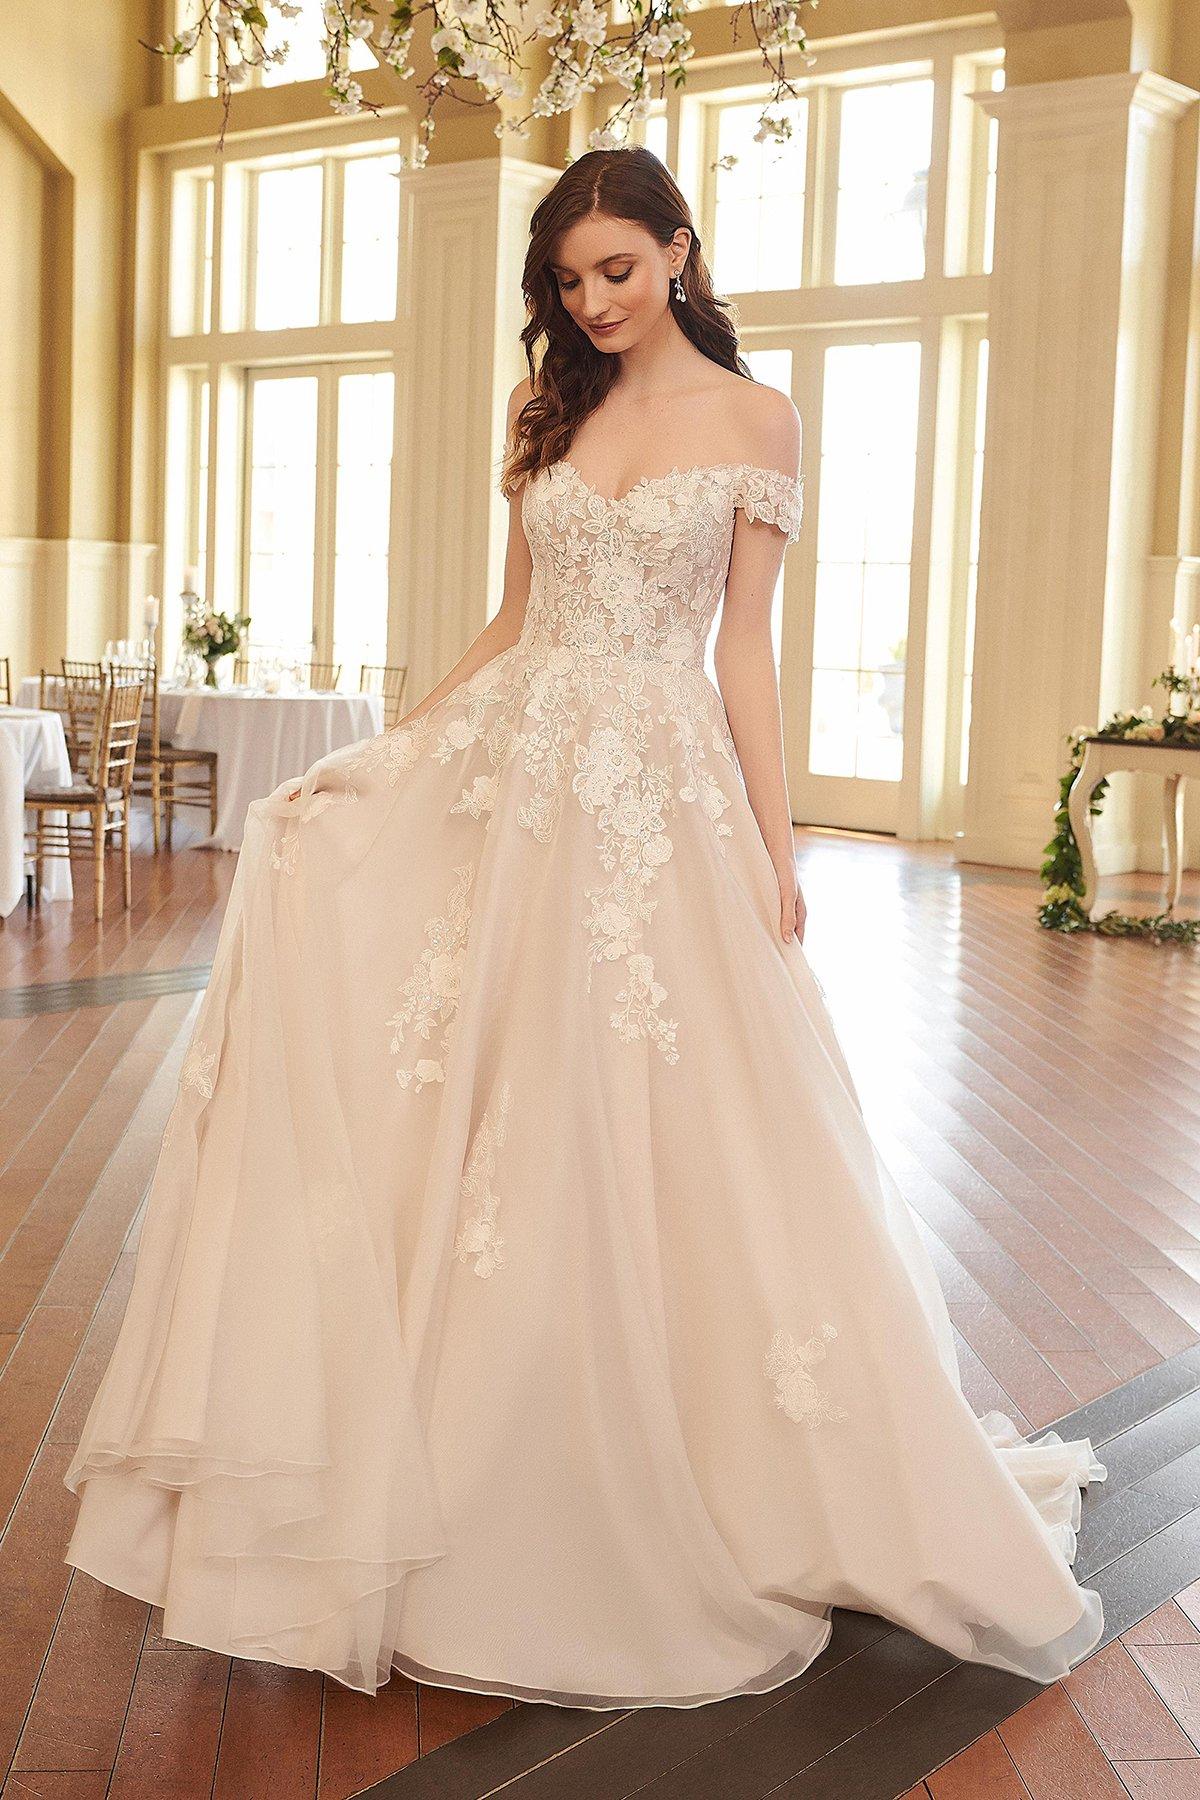 Orbita Restricciones Delicioso 100 vestidos de novia de corte princesa para tu boda. ¿Lista para volverte  a enamorar?